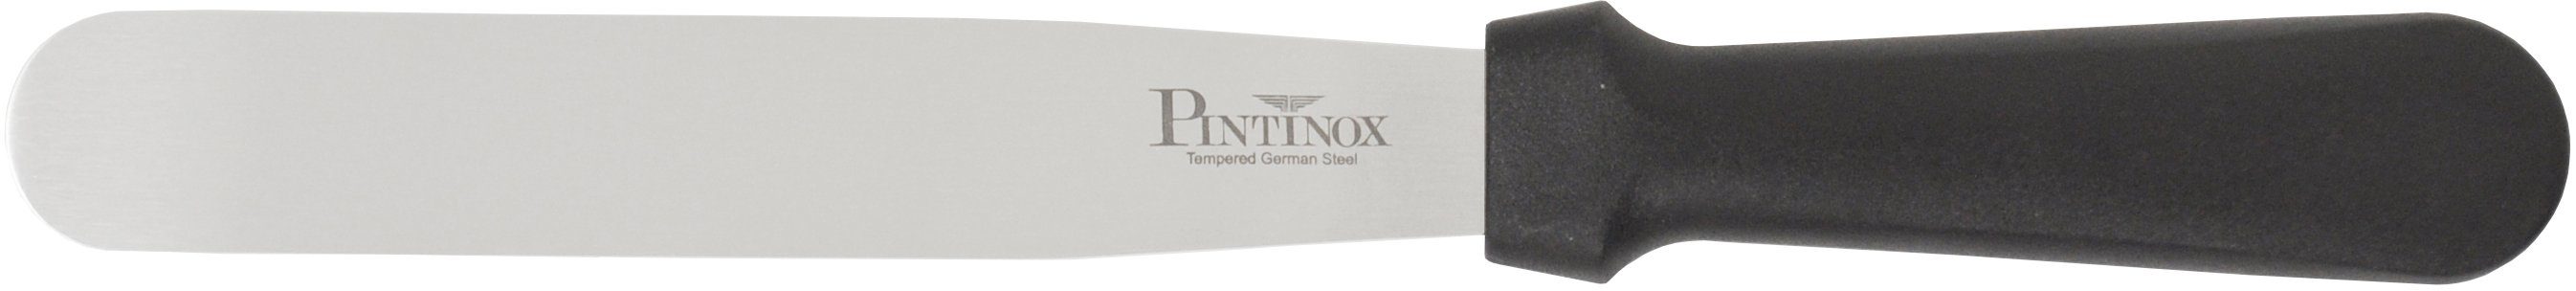 PINTINOX Streichpalette 10,5cm, Professional, Spatel 1 spülmaschinengeeinget, Edelstahl, Spatel 1 15,9 cm